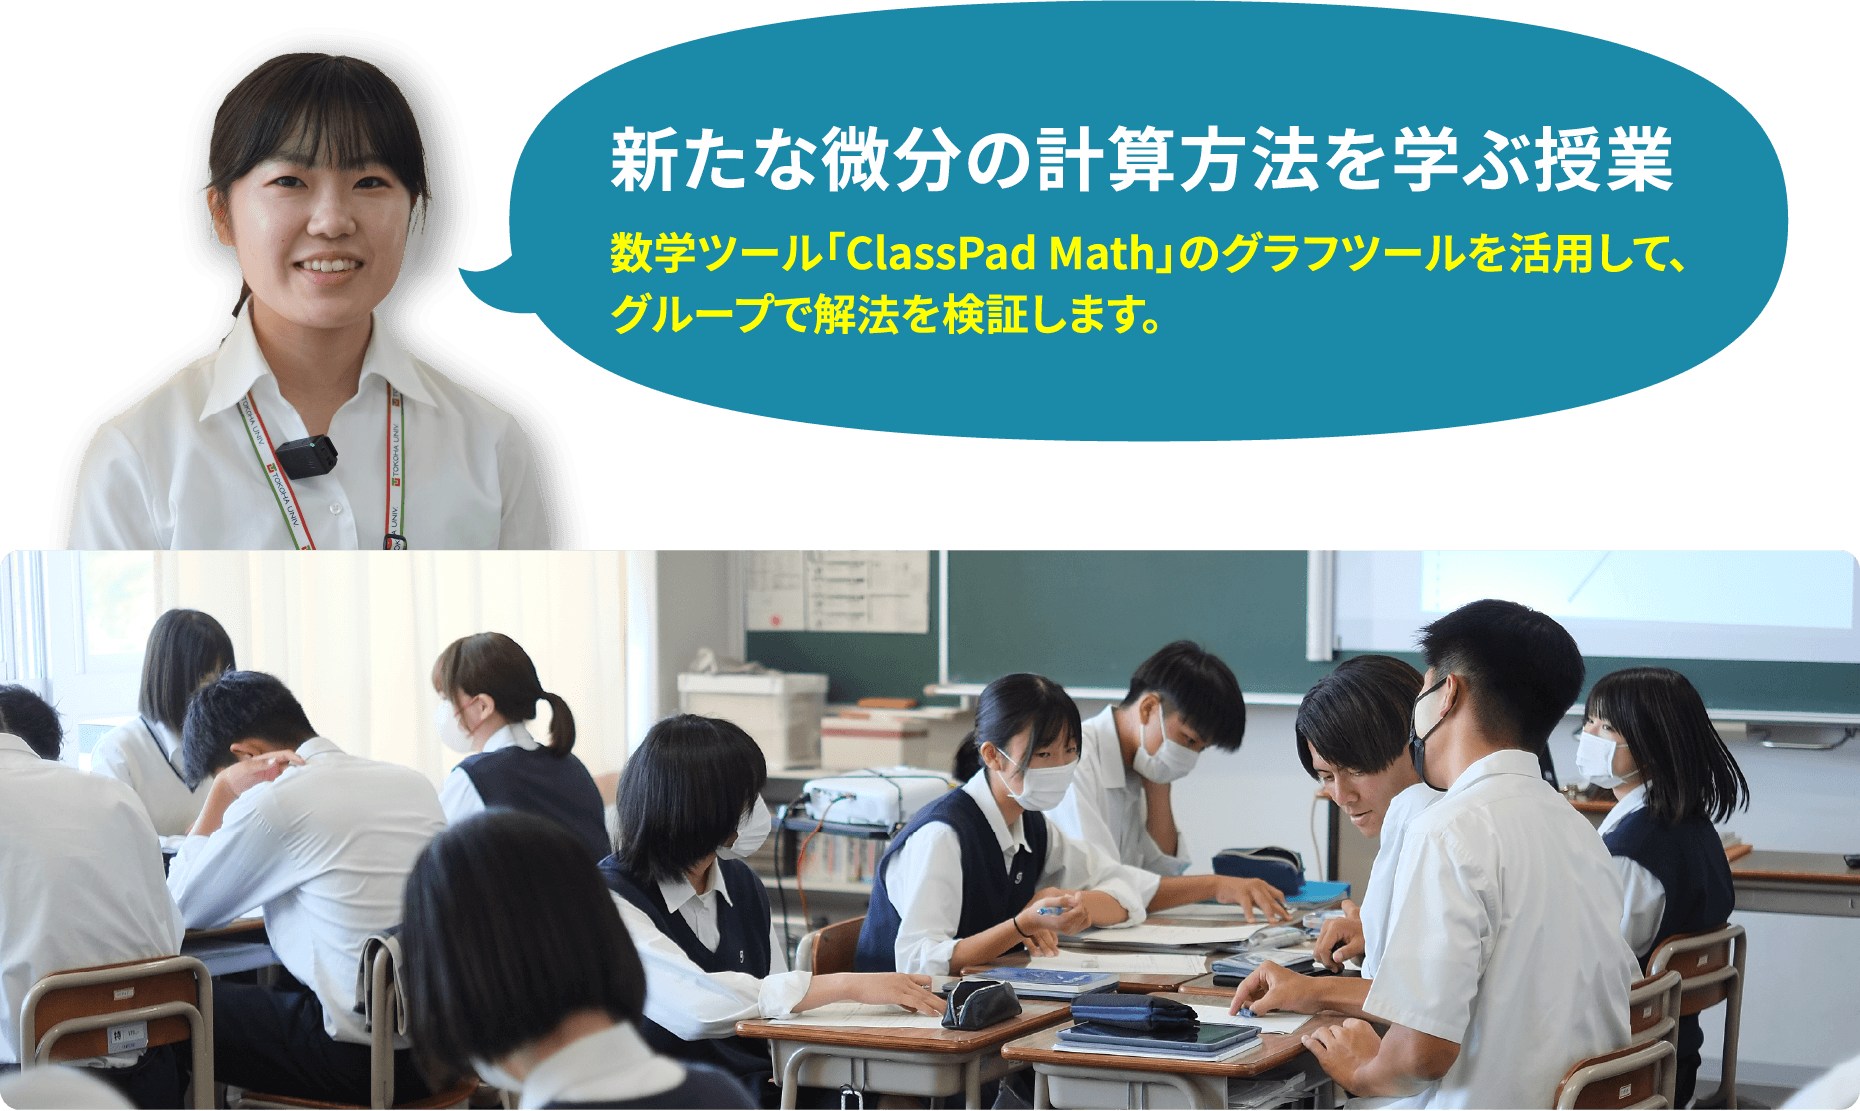 新たな微分の計算方法を学ぶ授業　数学ツール「ClassPad Math」のグラフツールを活用して、 グループで解法を検証します。